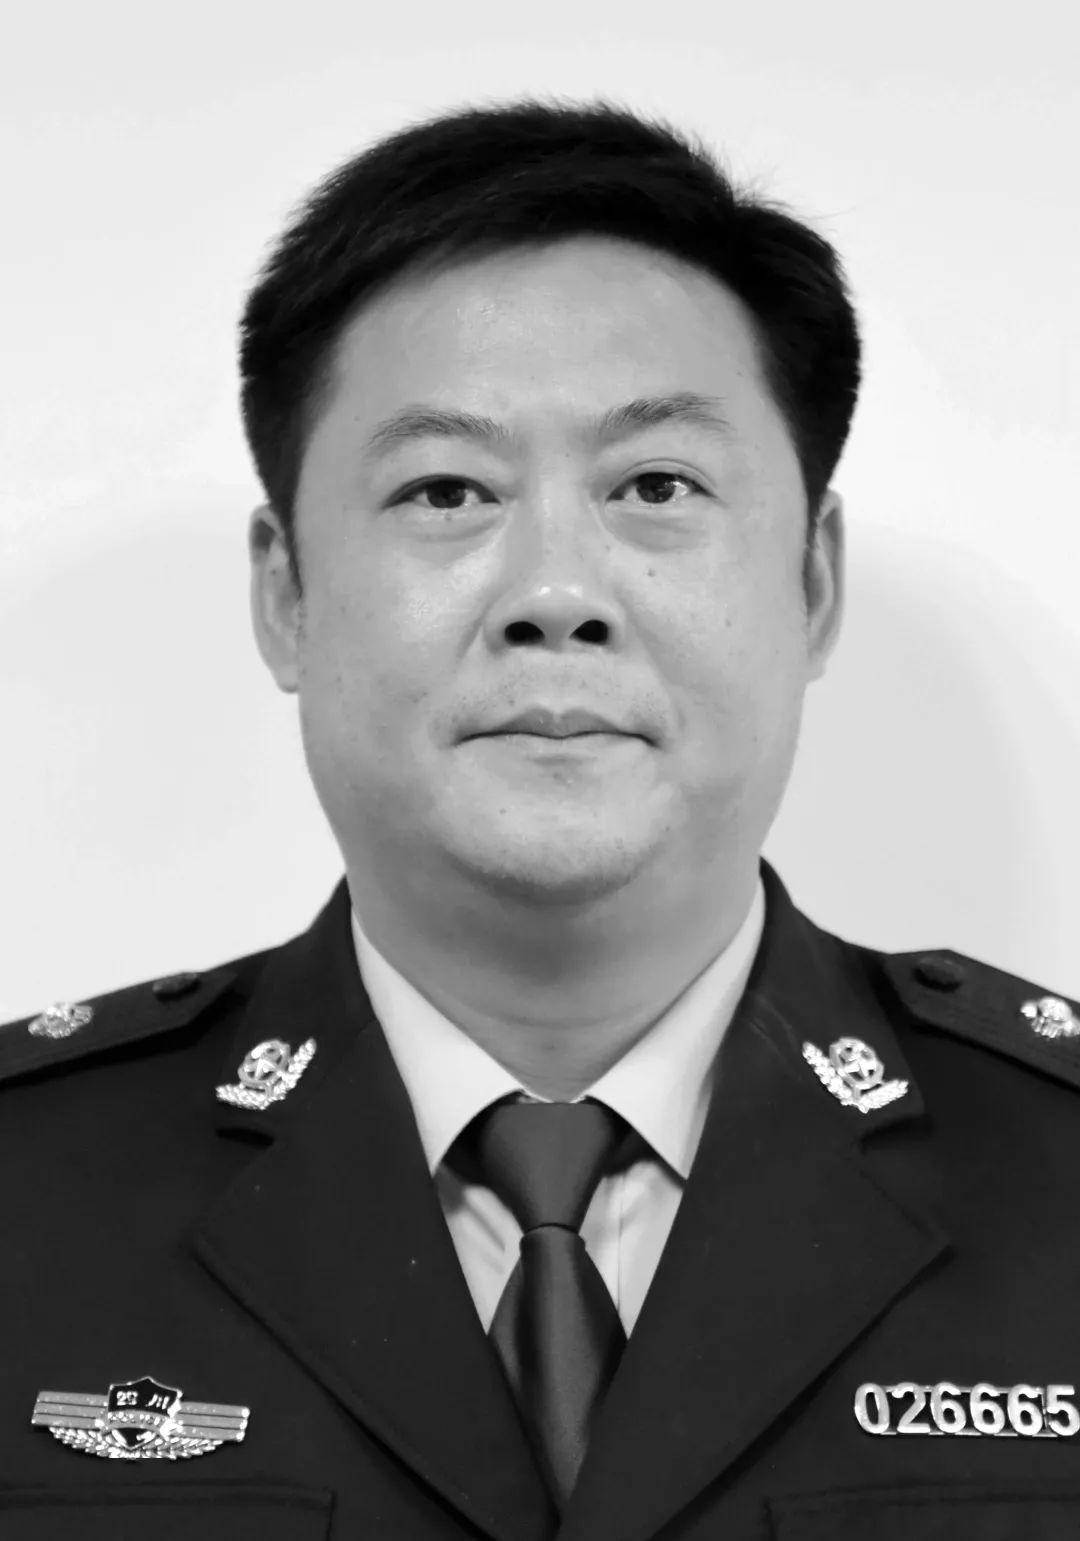 1996年毕业于中国人民公安大学,7月参加工作,先后在江苏省无锡市公安